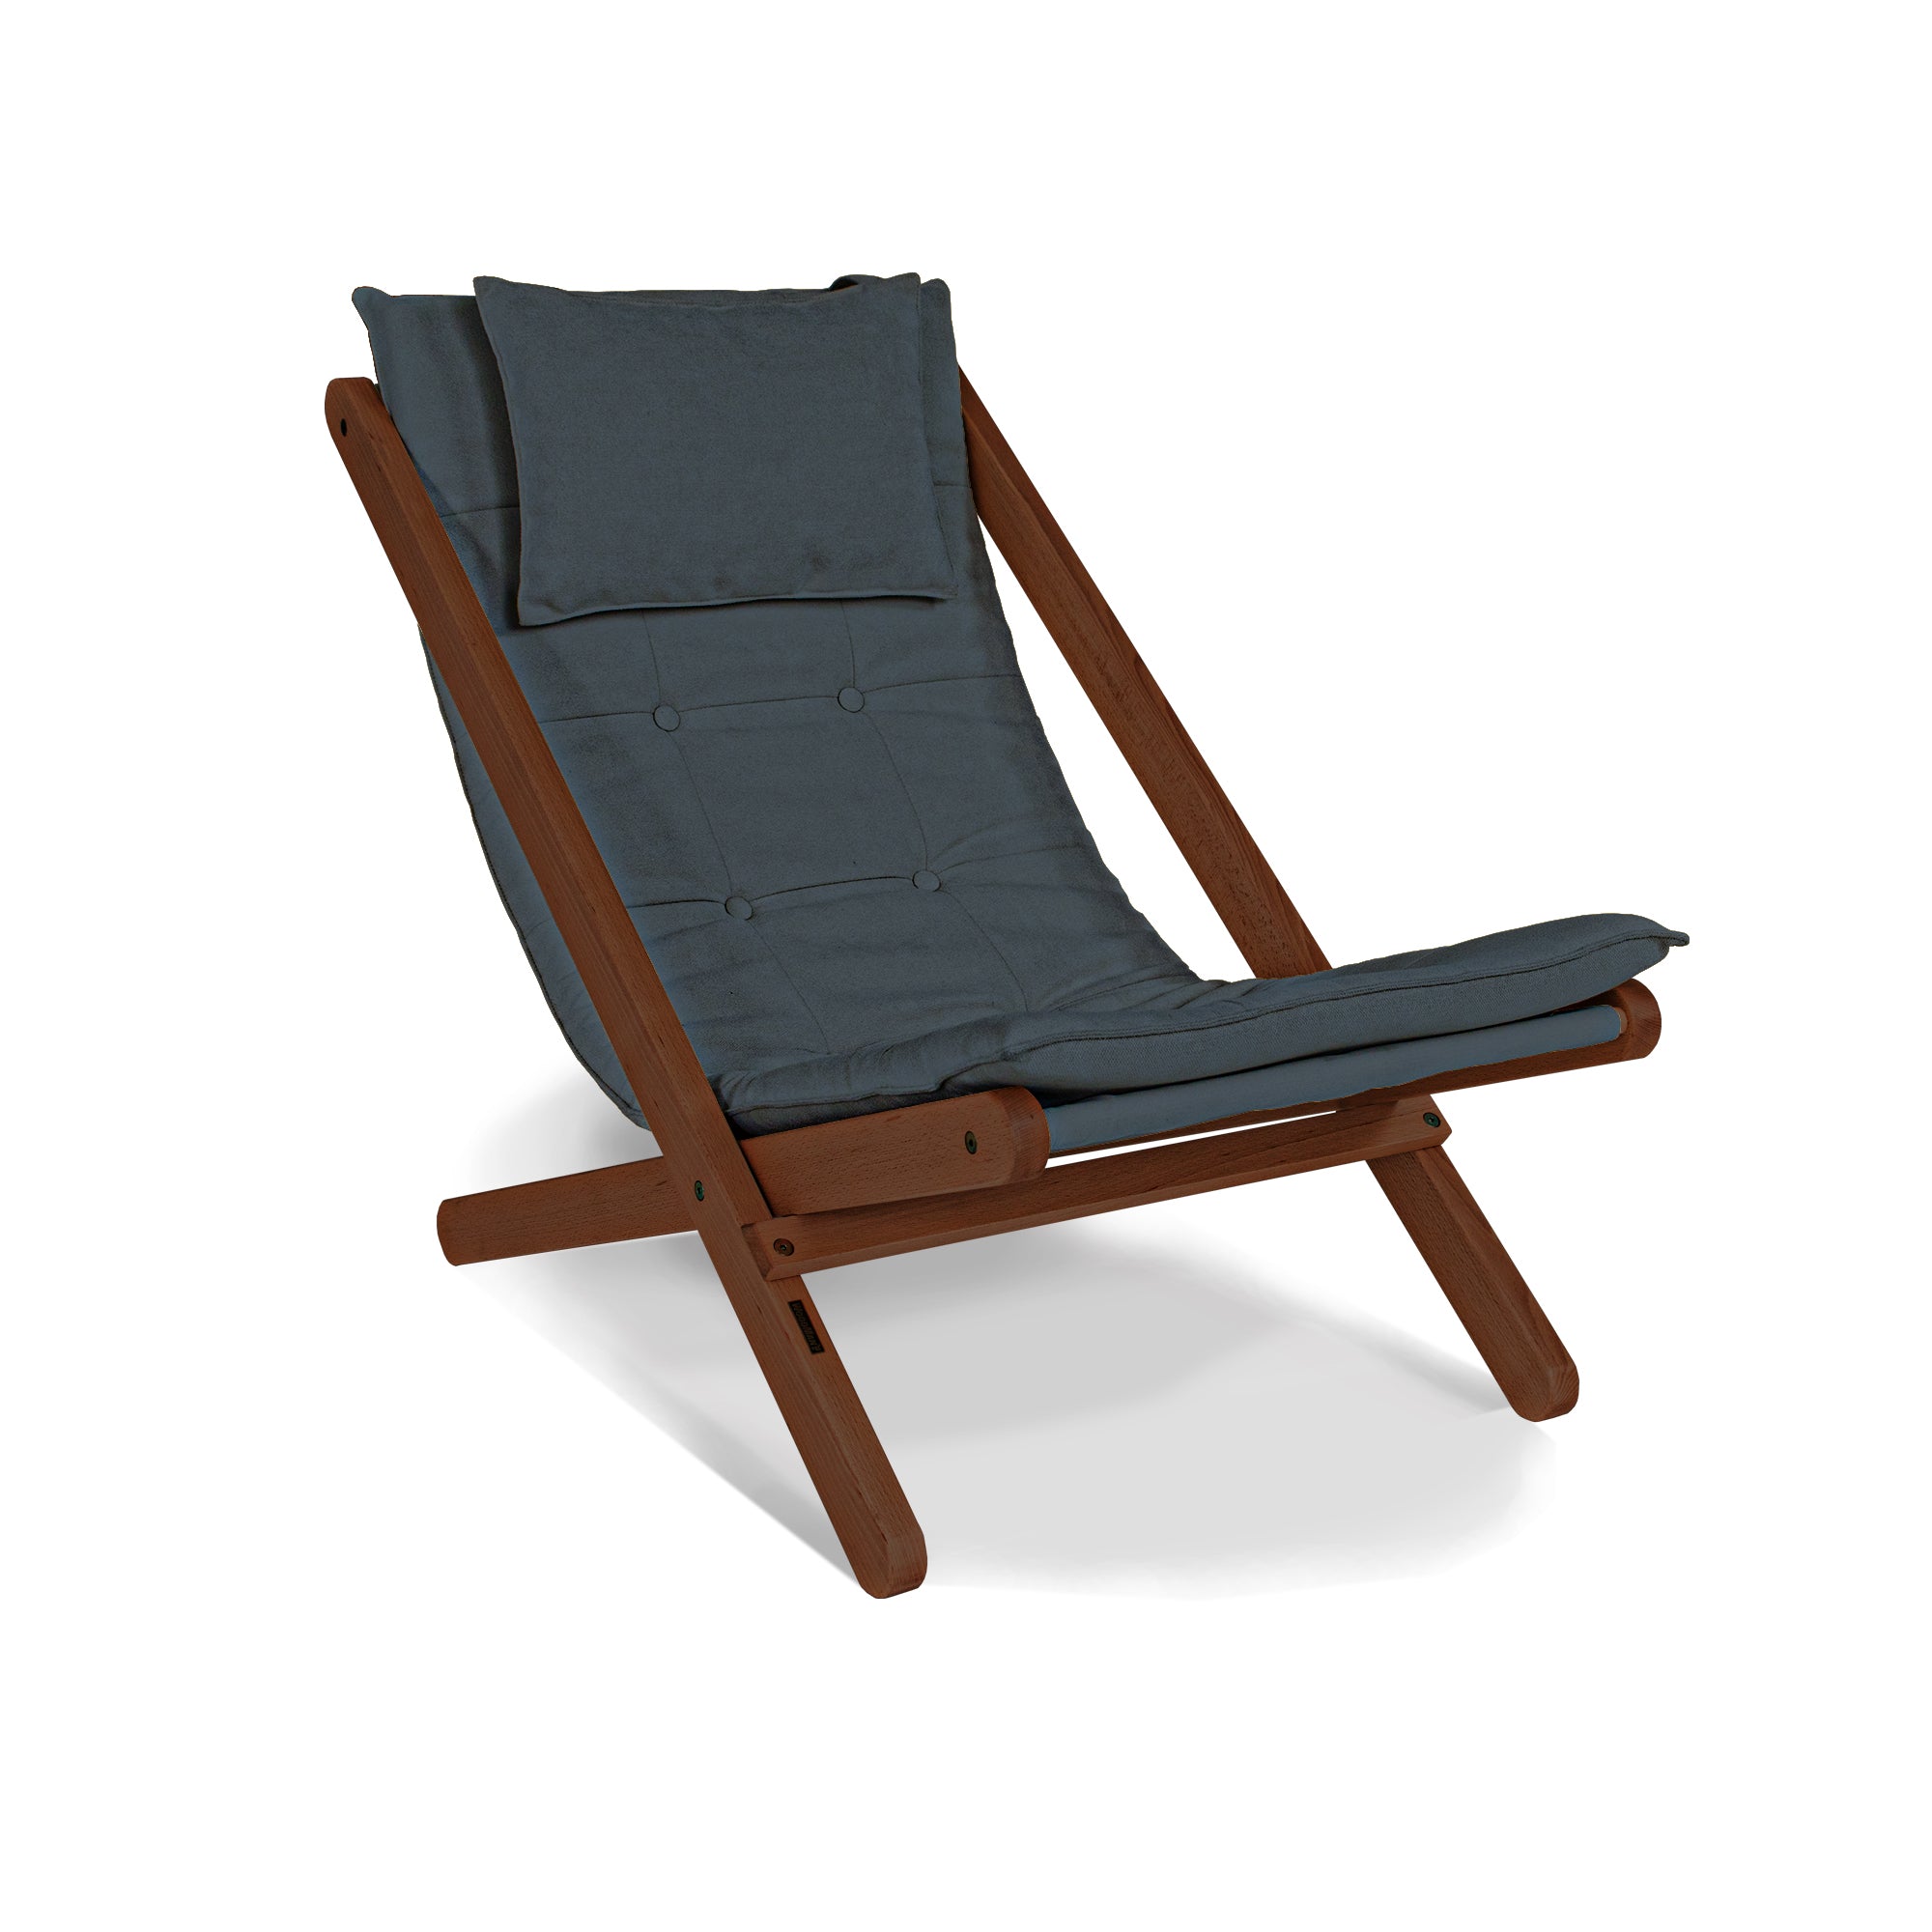 ALLEGRO Deckchair -walnut frame-graphite fabric